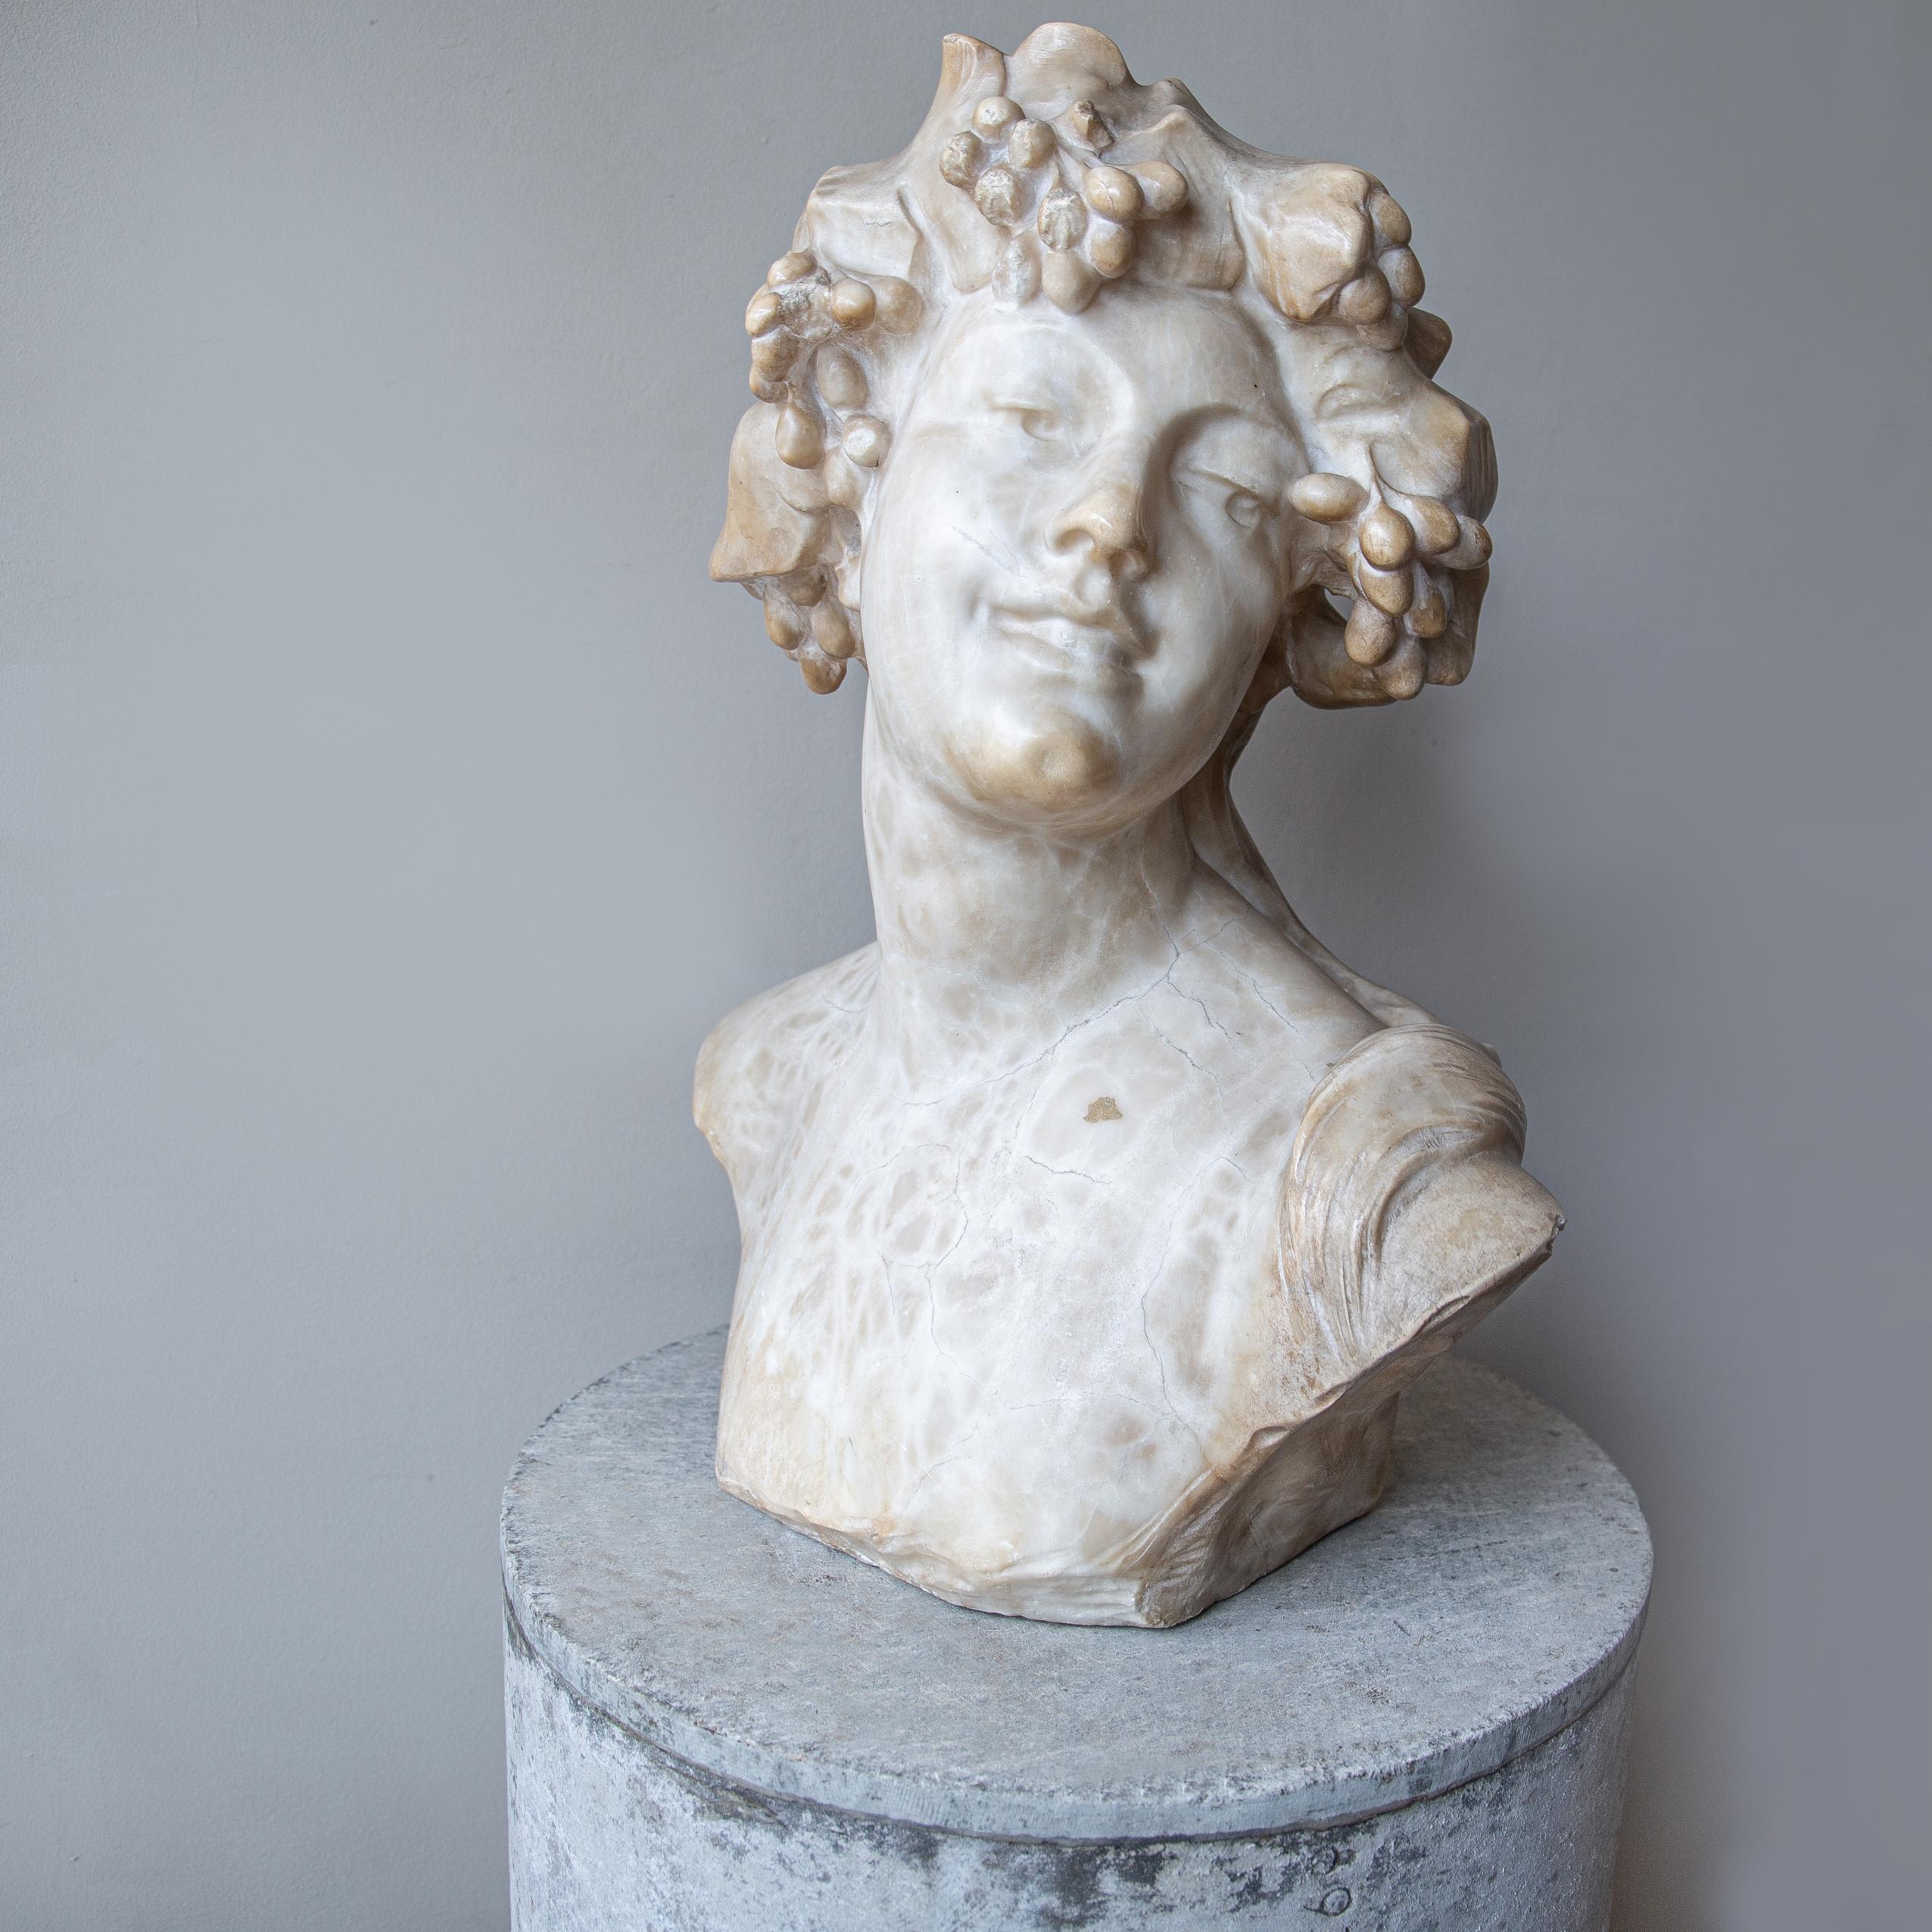 Belgian An Ecstatic Bacchanalian figure in alabaster by Jef Lambeaux, early 20th century